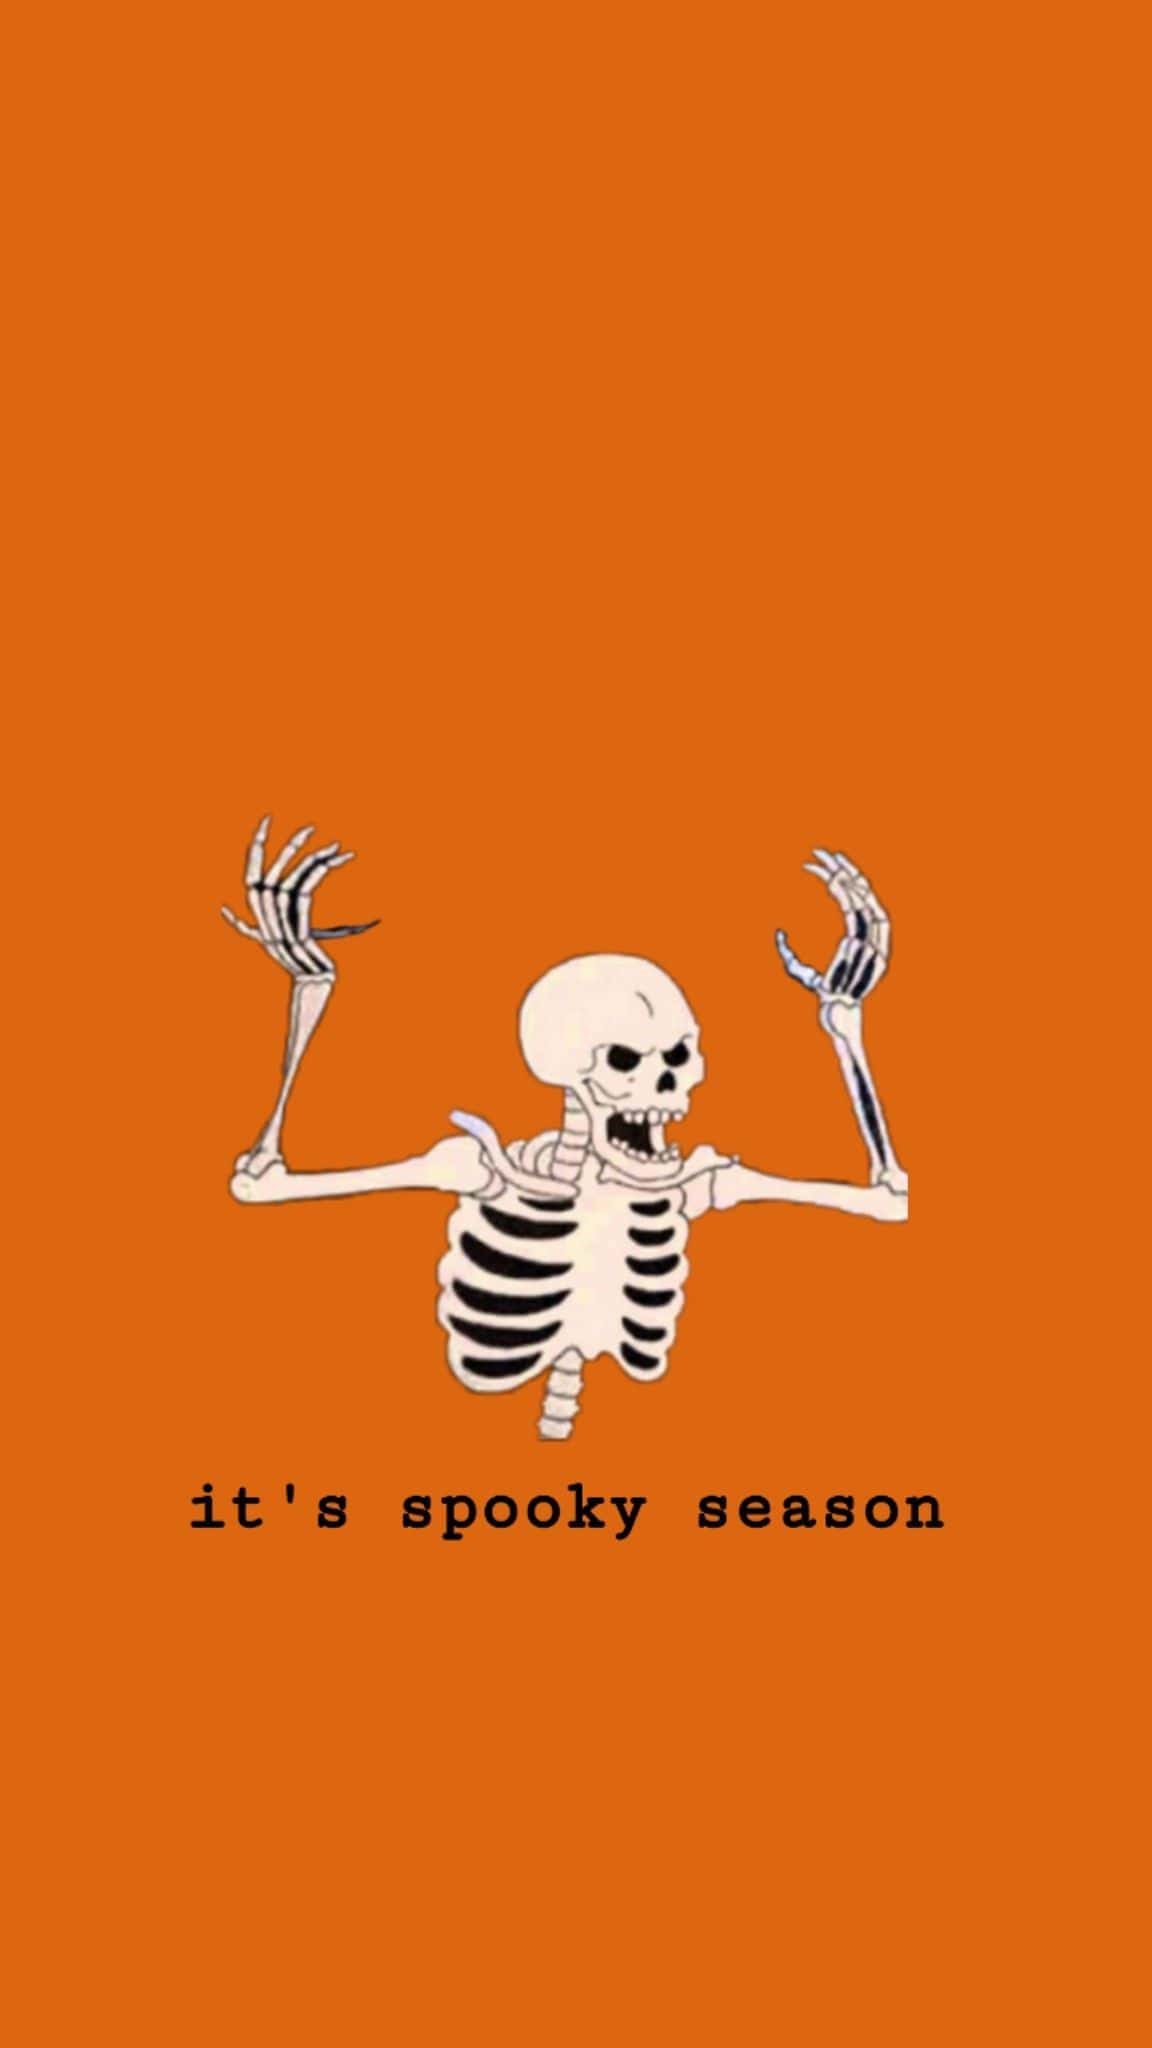 Spooky Season Wallpaper - EnJpg